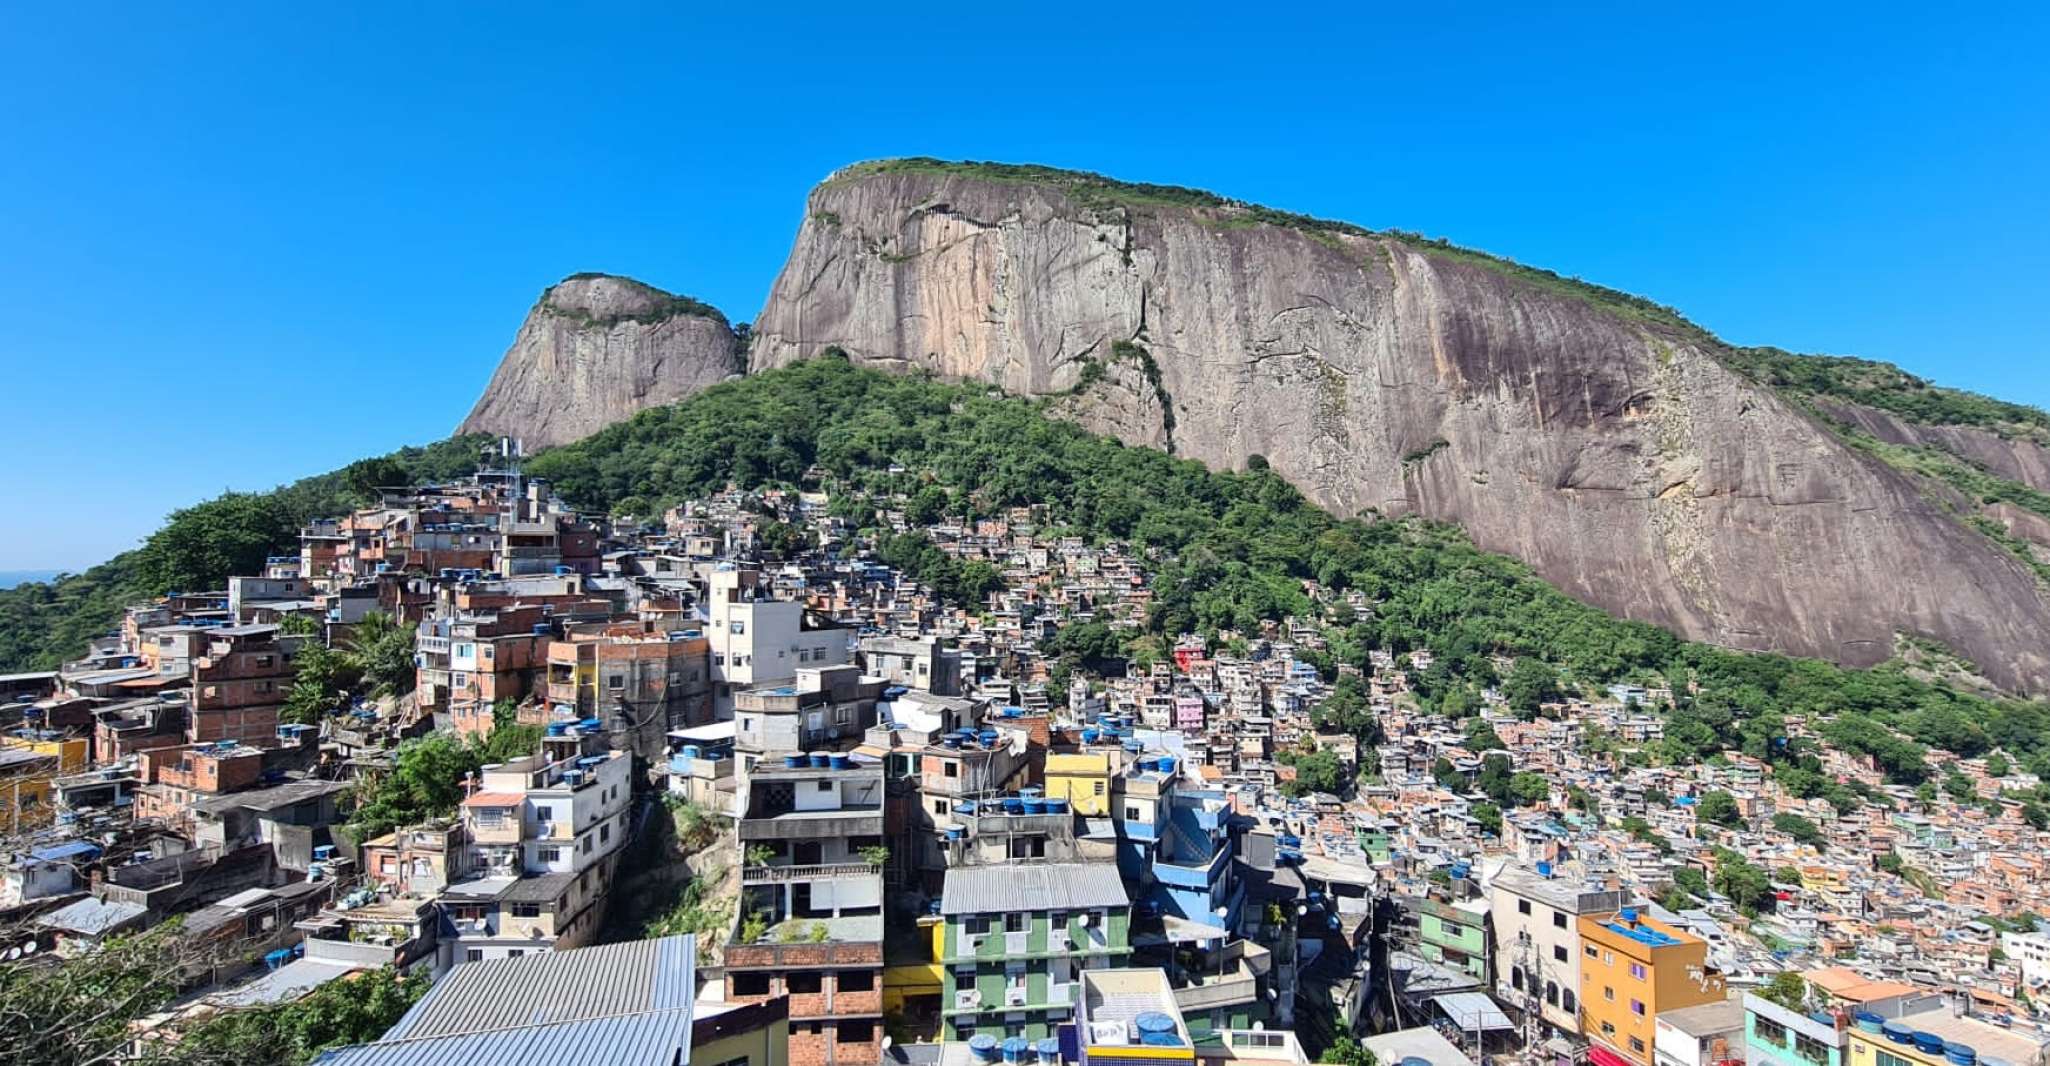 Favela Tour The Original, Rocinha & Vila Canoas since 1992 - Housity